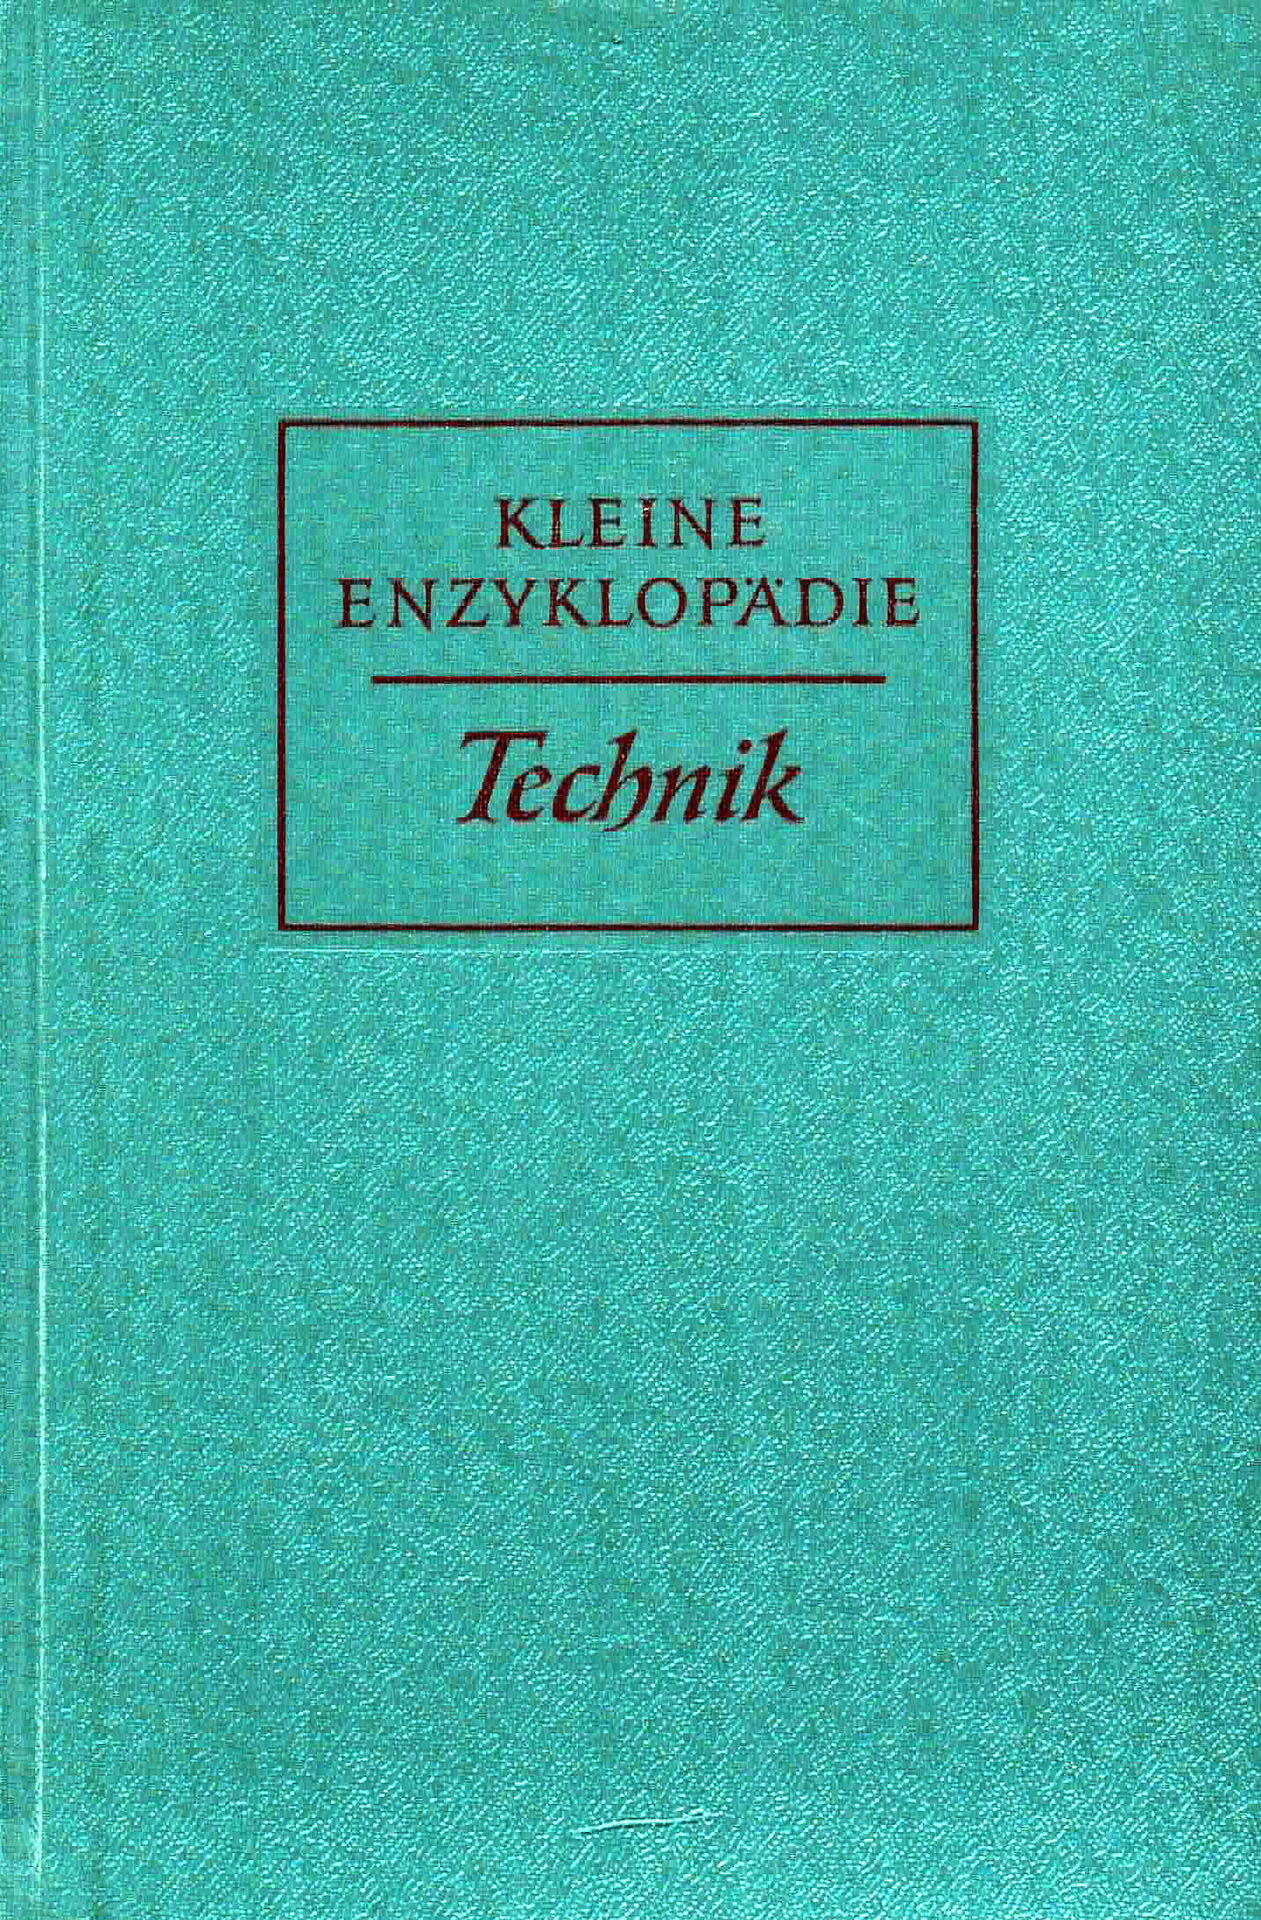 Kleine Enzyklopädie Technik - Beer, Dr.-Ing. Benno / Linsbauer, Valentine / Lüder, Prof Dr.-Ing. / Niese, Dr. Gerhardt